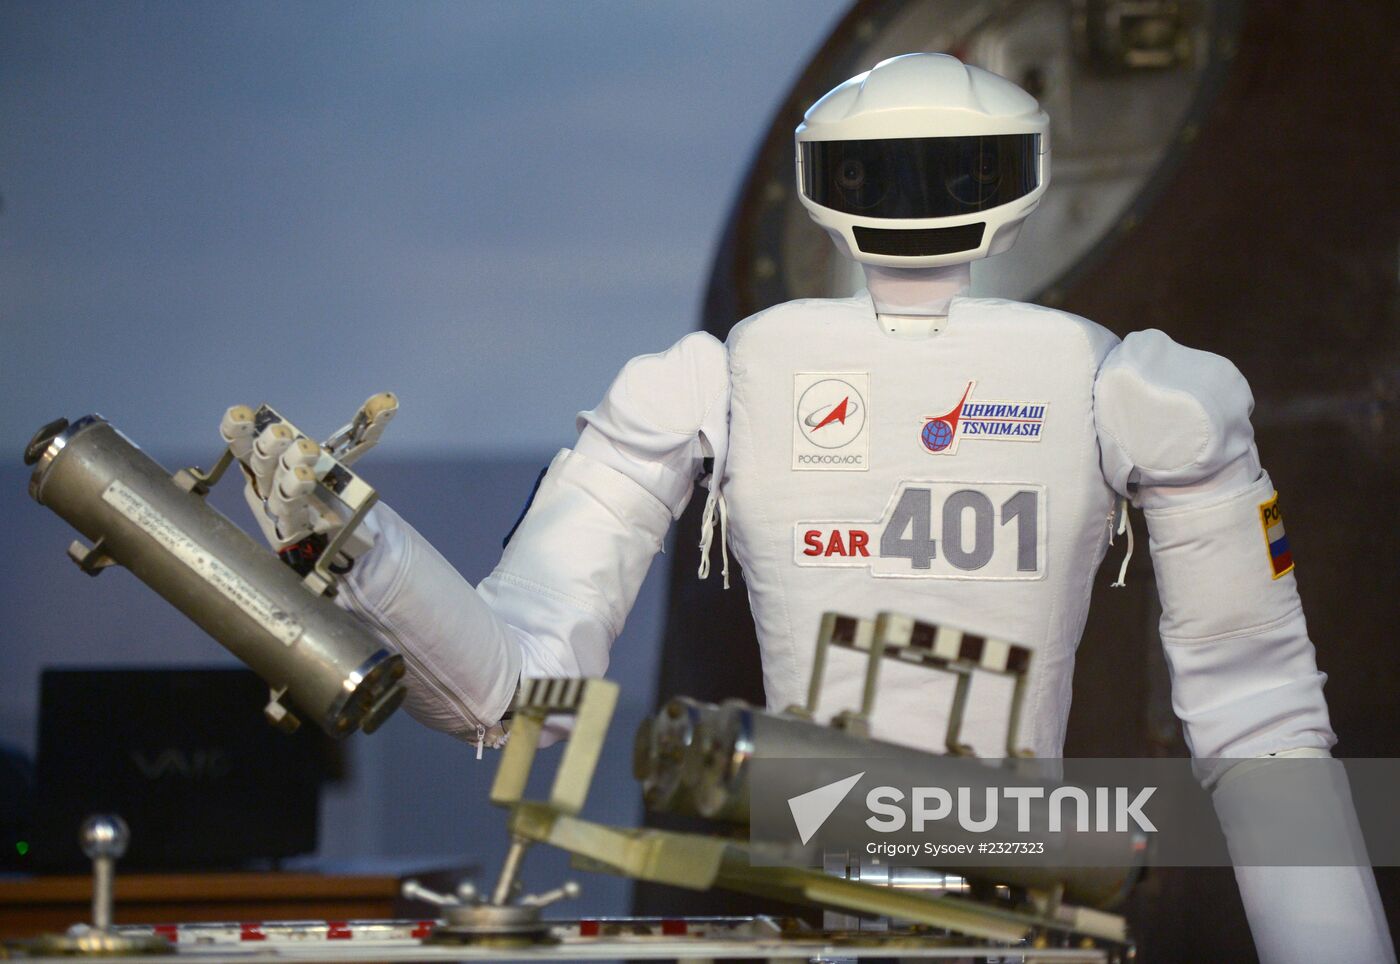 Russian cosmonaut robot displayed at Cosmonauts Training Center